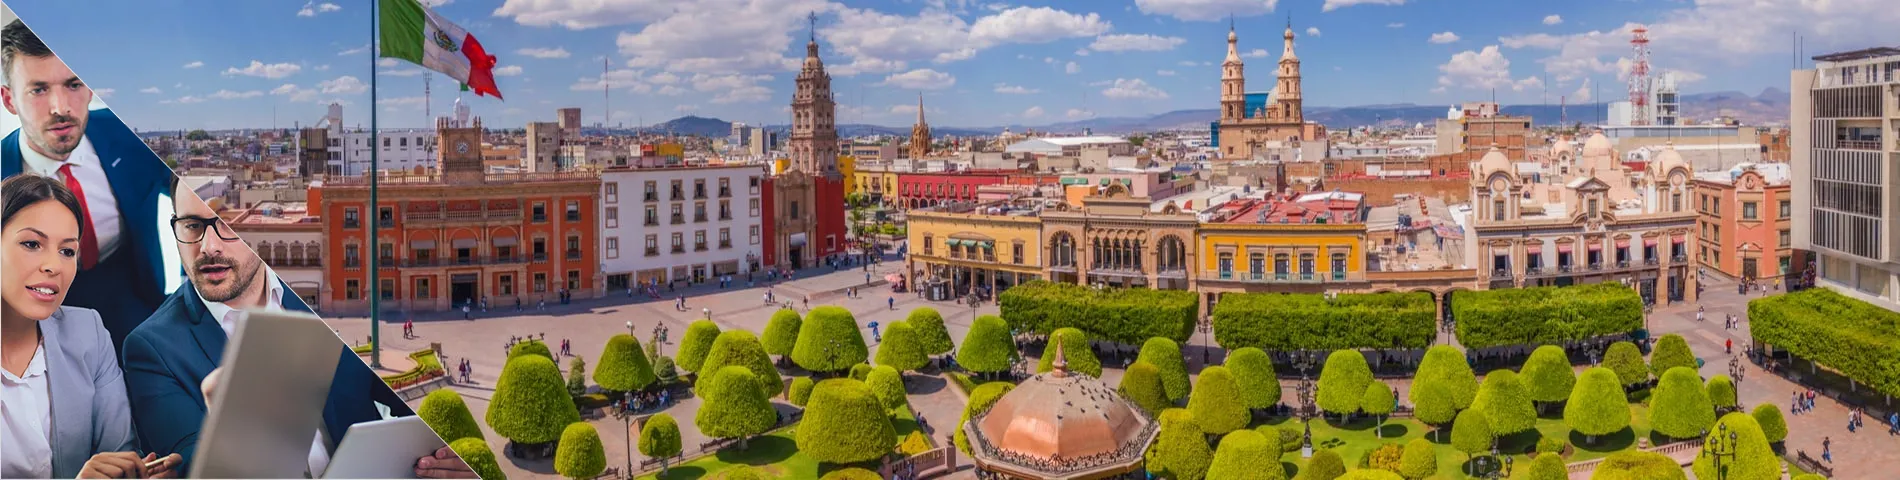 Guanajuato - Grup Combinat: Estàndard i Negocis  